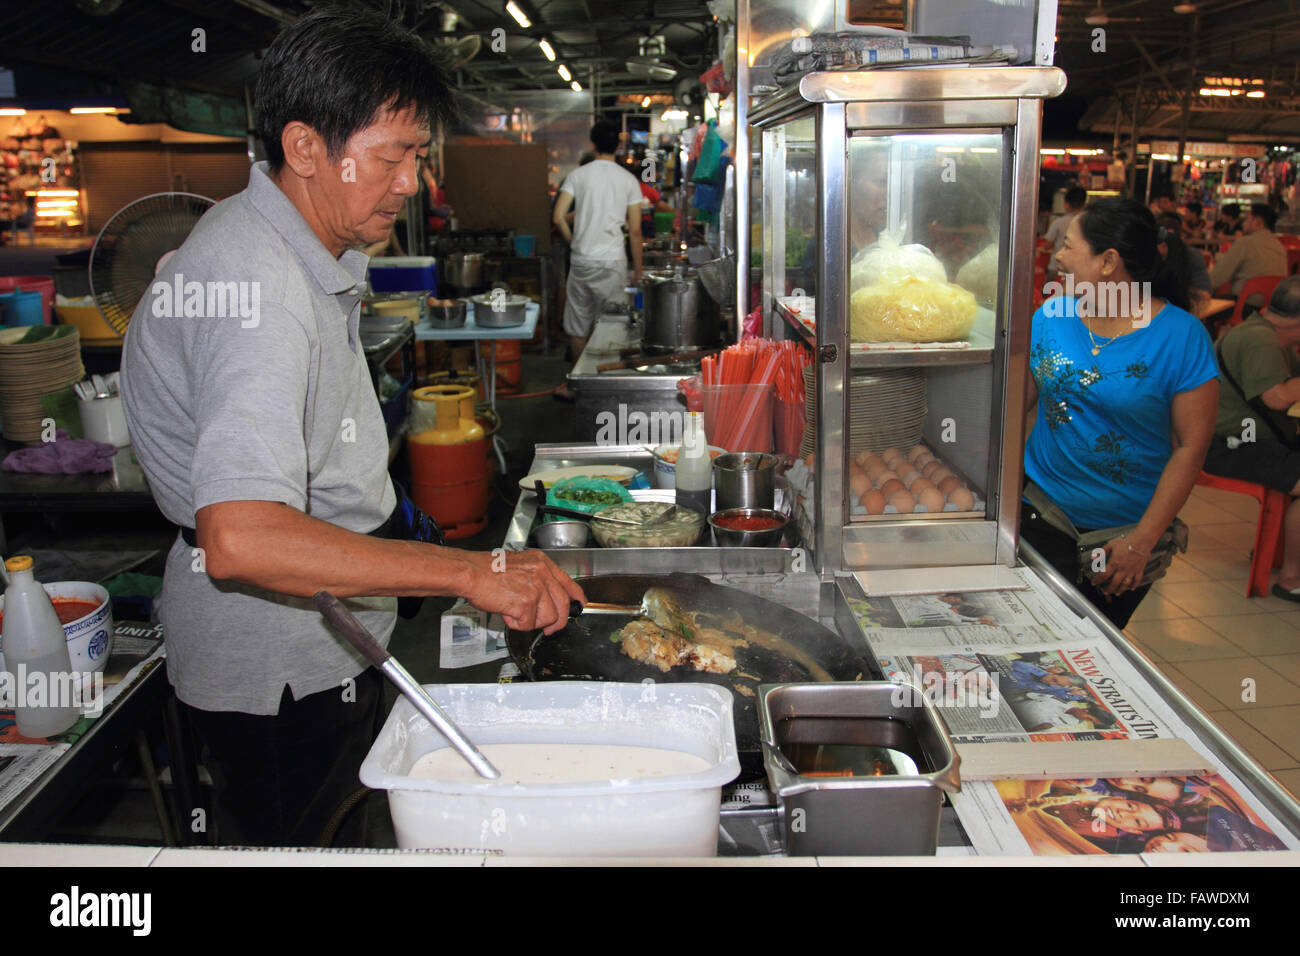 hawker Stall verkauft Satay, ein Mann kokst lokales Gericht, Penang, Malaysia Stockfoto